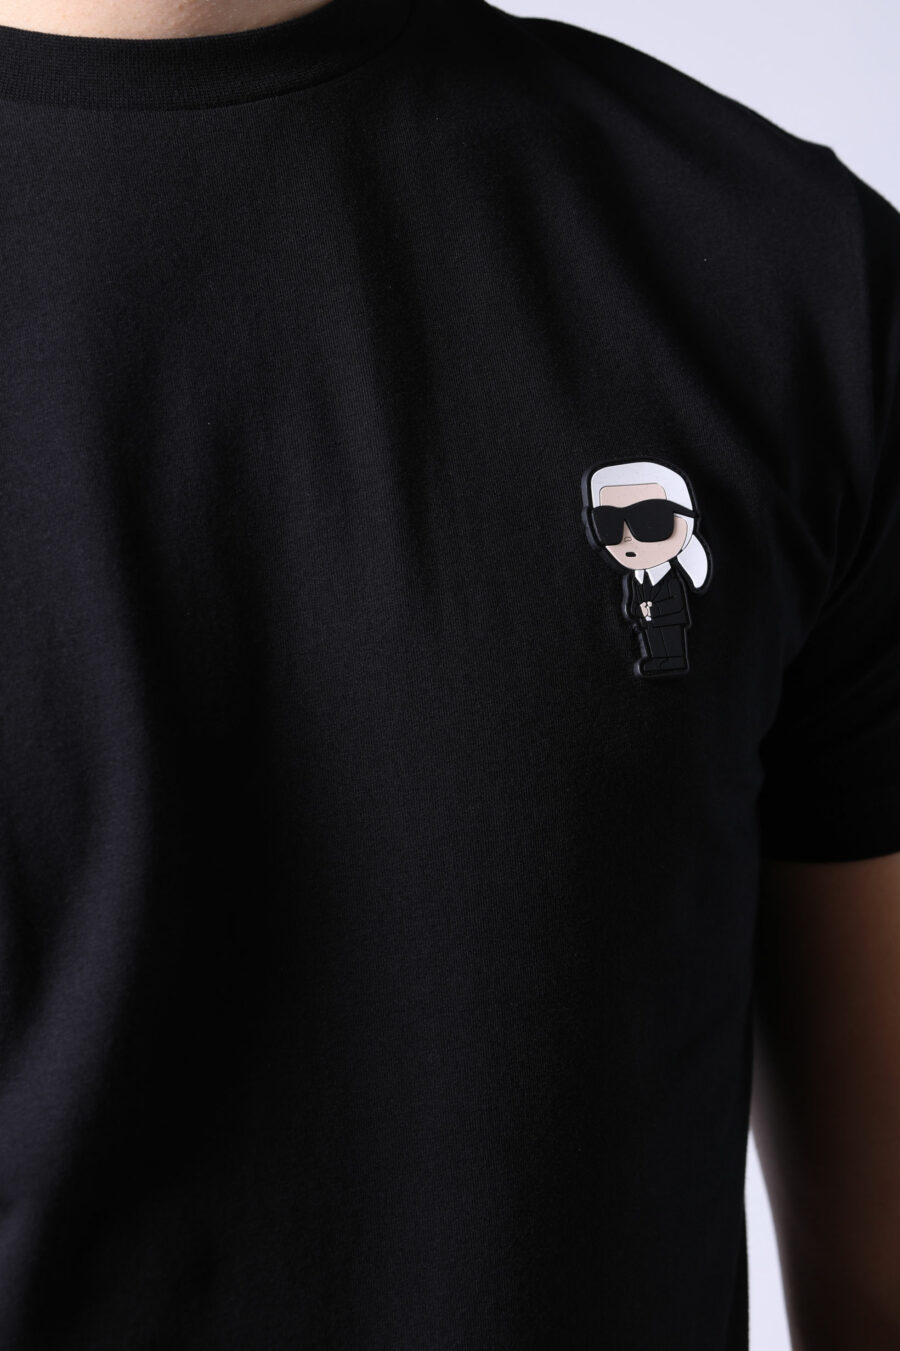 Camiseta negra con logo "ikonik" - Untitled Catalog 05721